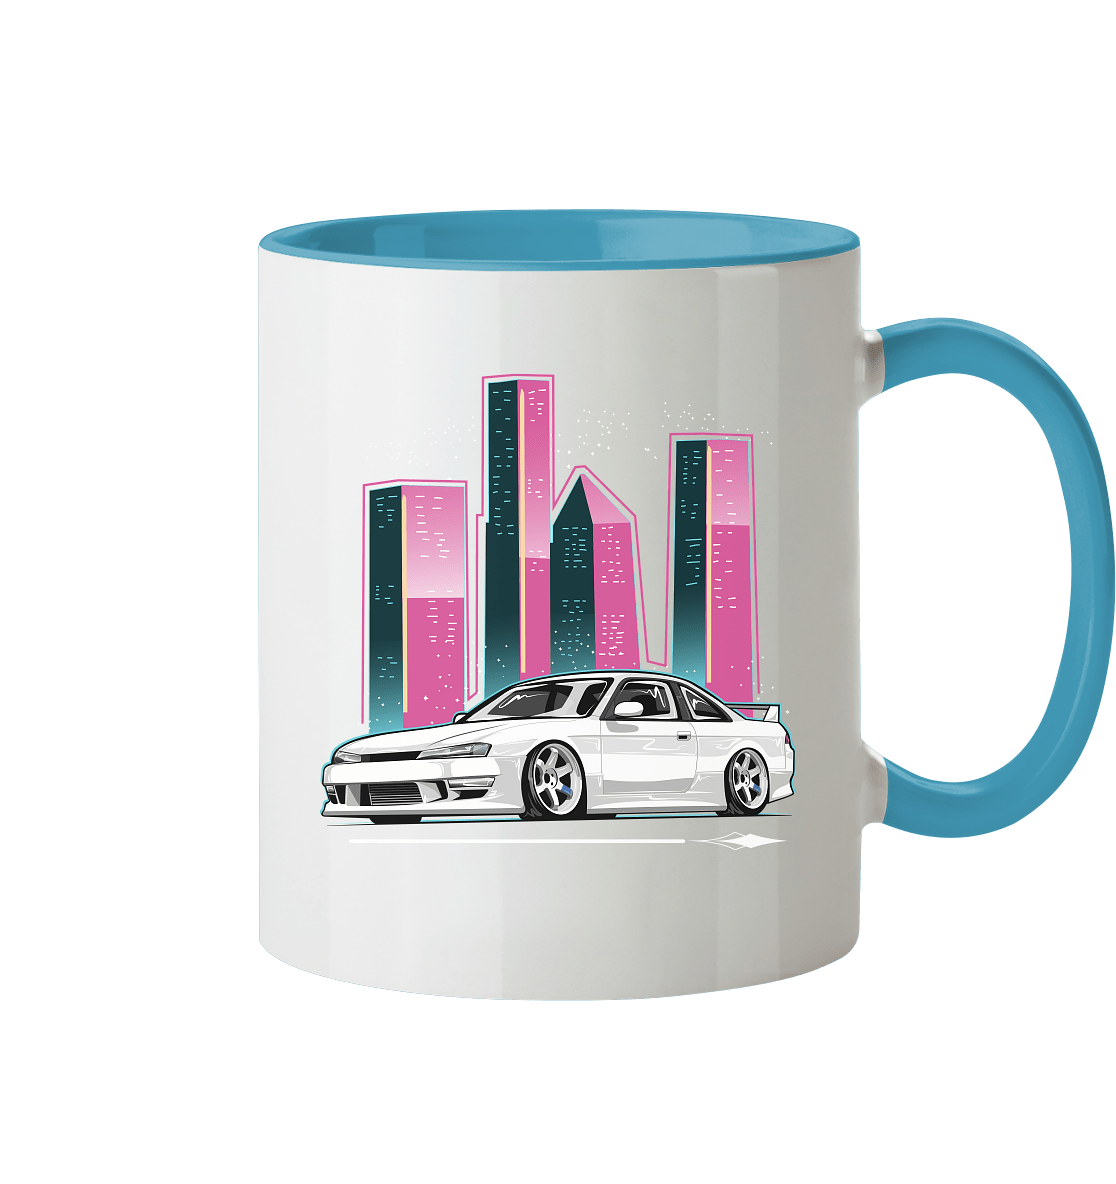 Silvia 200SX S14A - MotoMerch.de